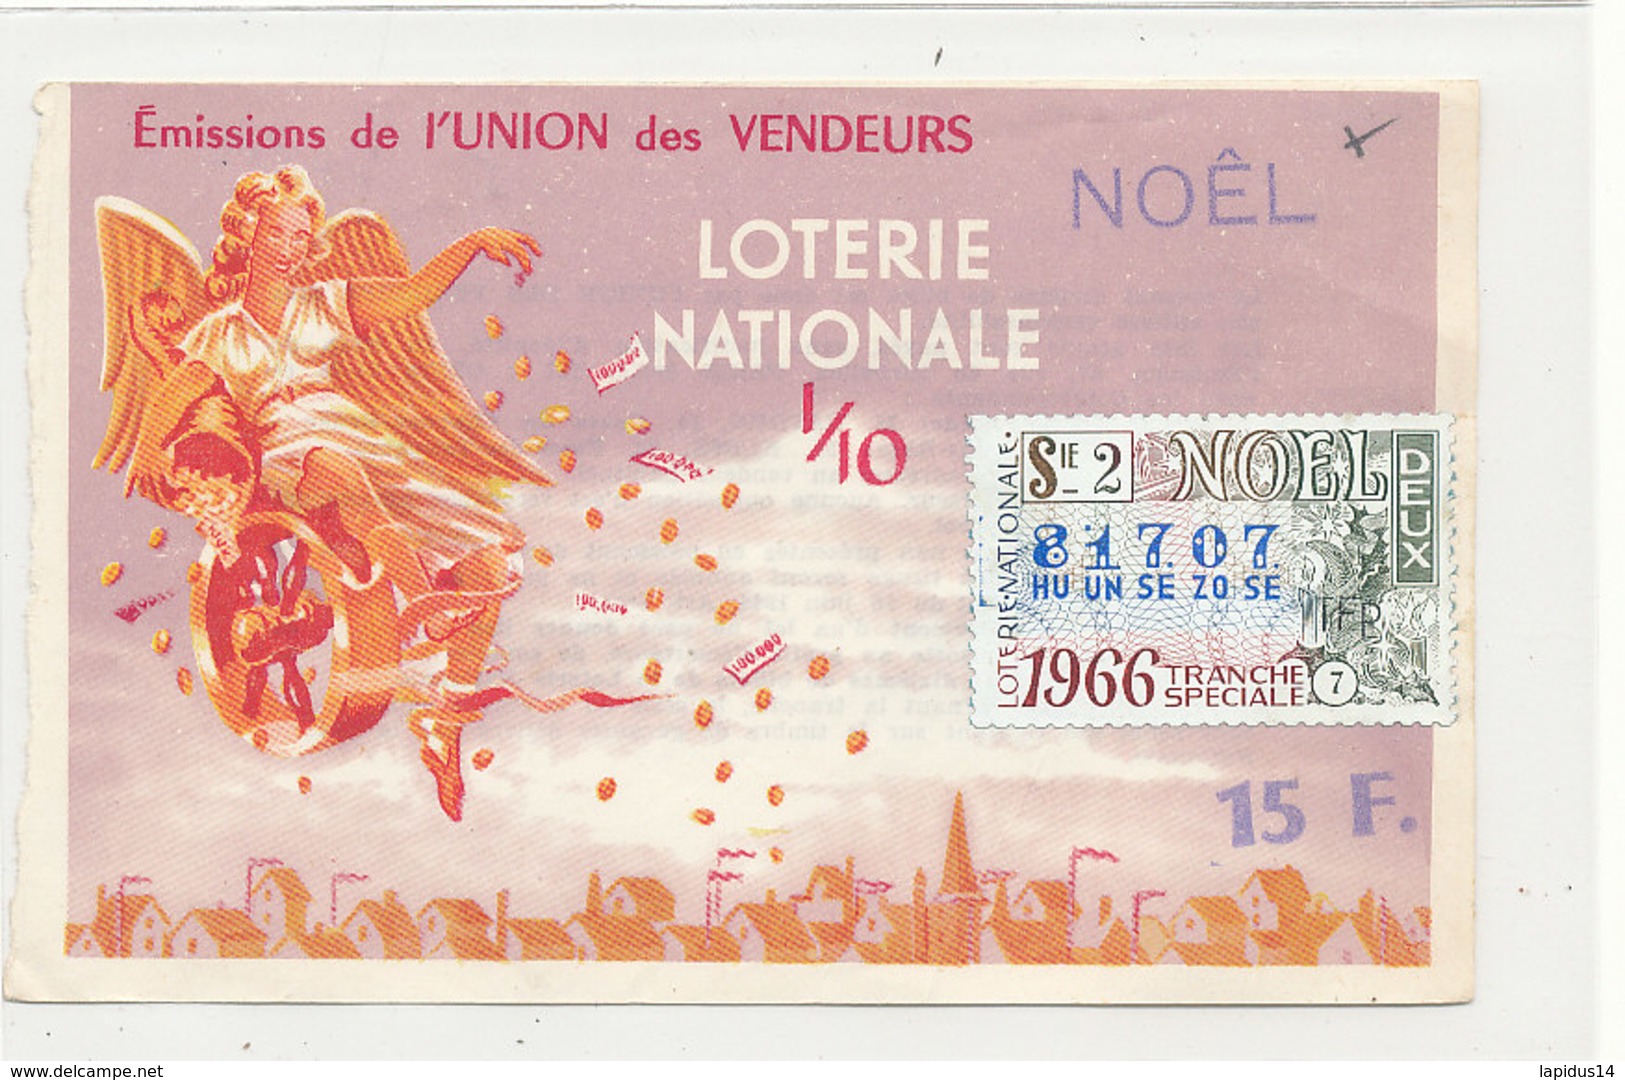 BL 162 / BILLET  LOTERIE NATIONALE   TRANCHE   DE  NOEL    UNION DES VENDEURS     1966 - Loterijbiljetten